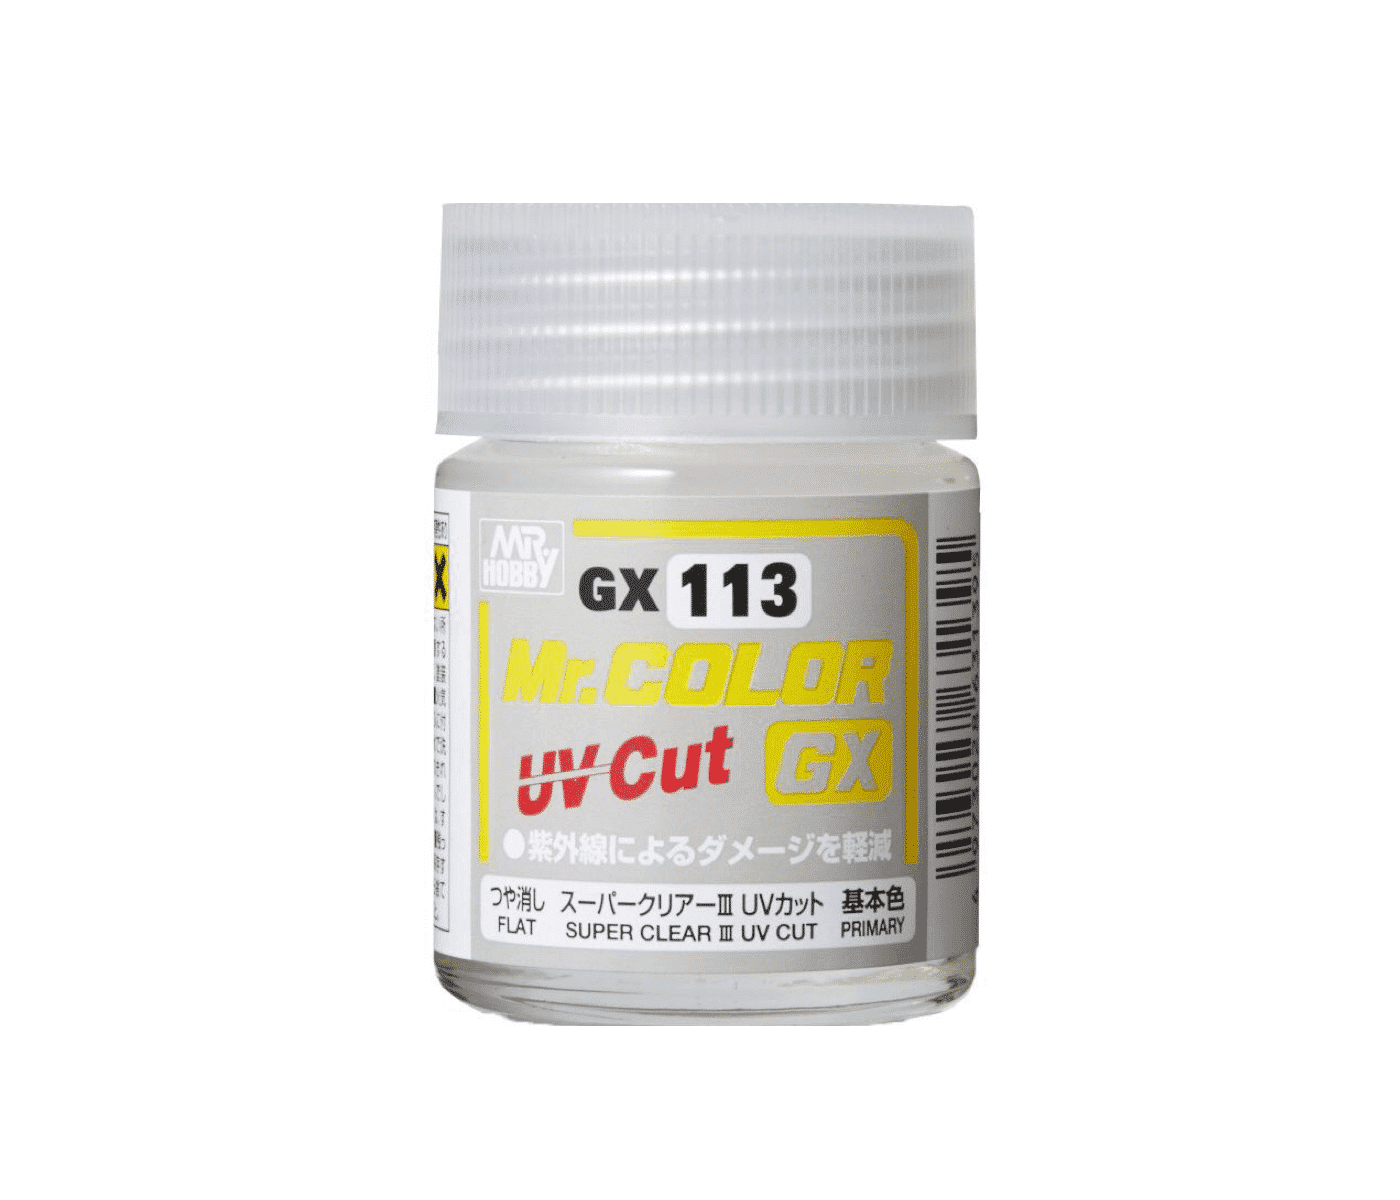 สีเคลียร์กันยูวีชนิดขวด GX113 UV CUT GLOSS ( ด้าน )